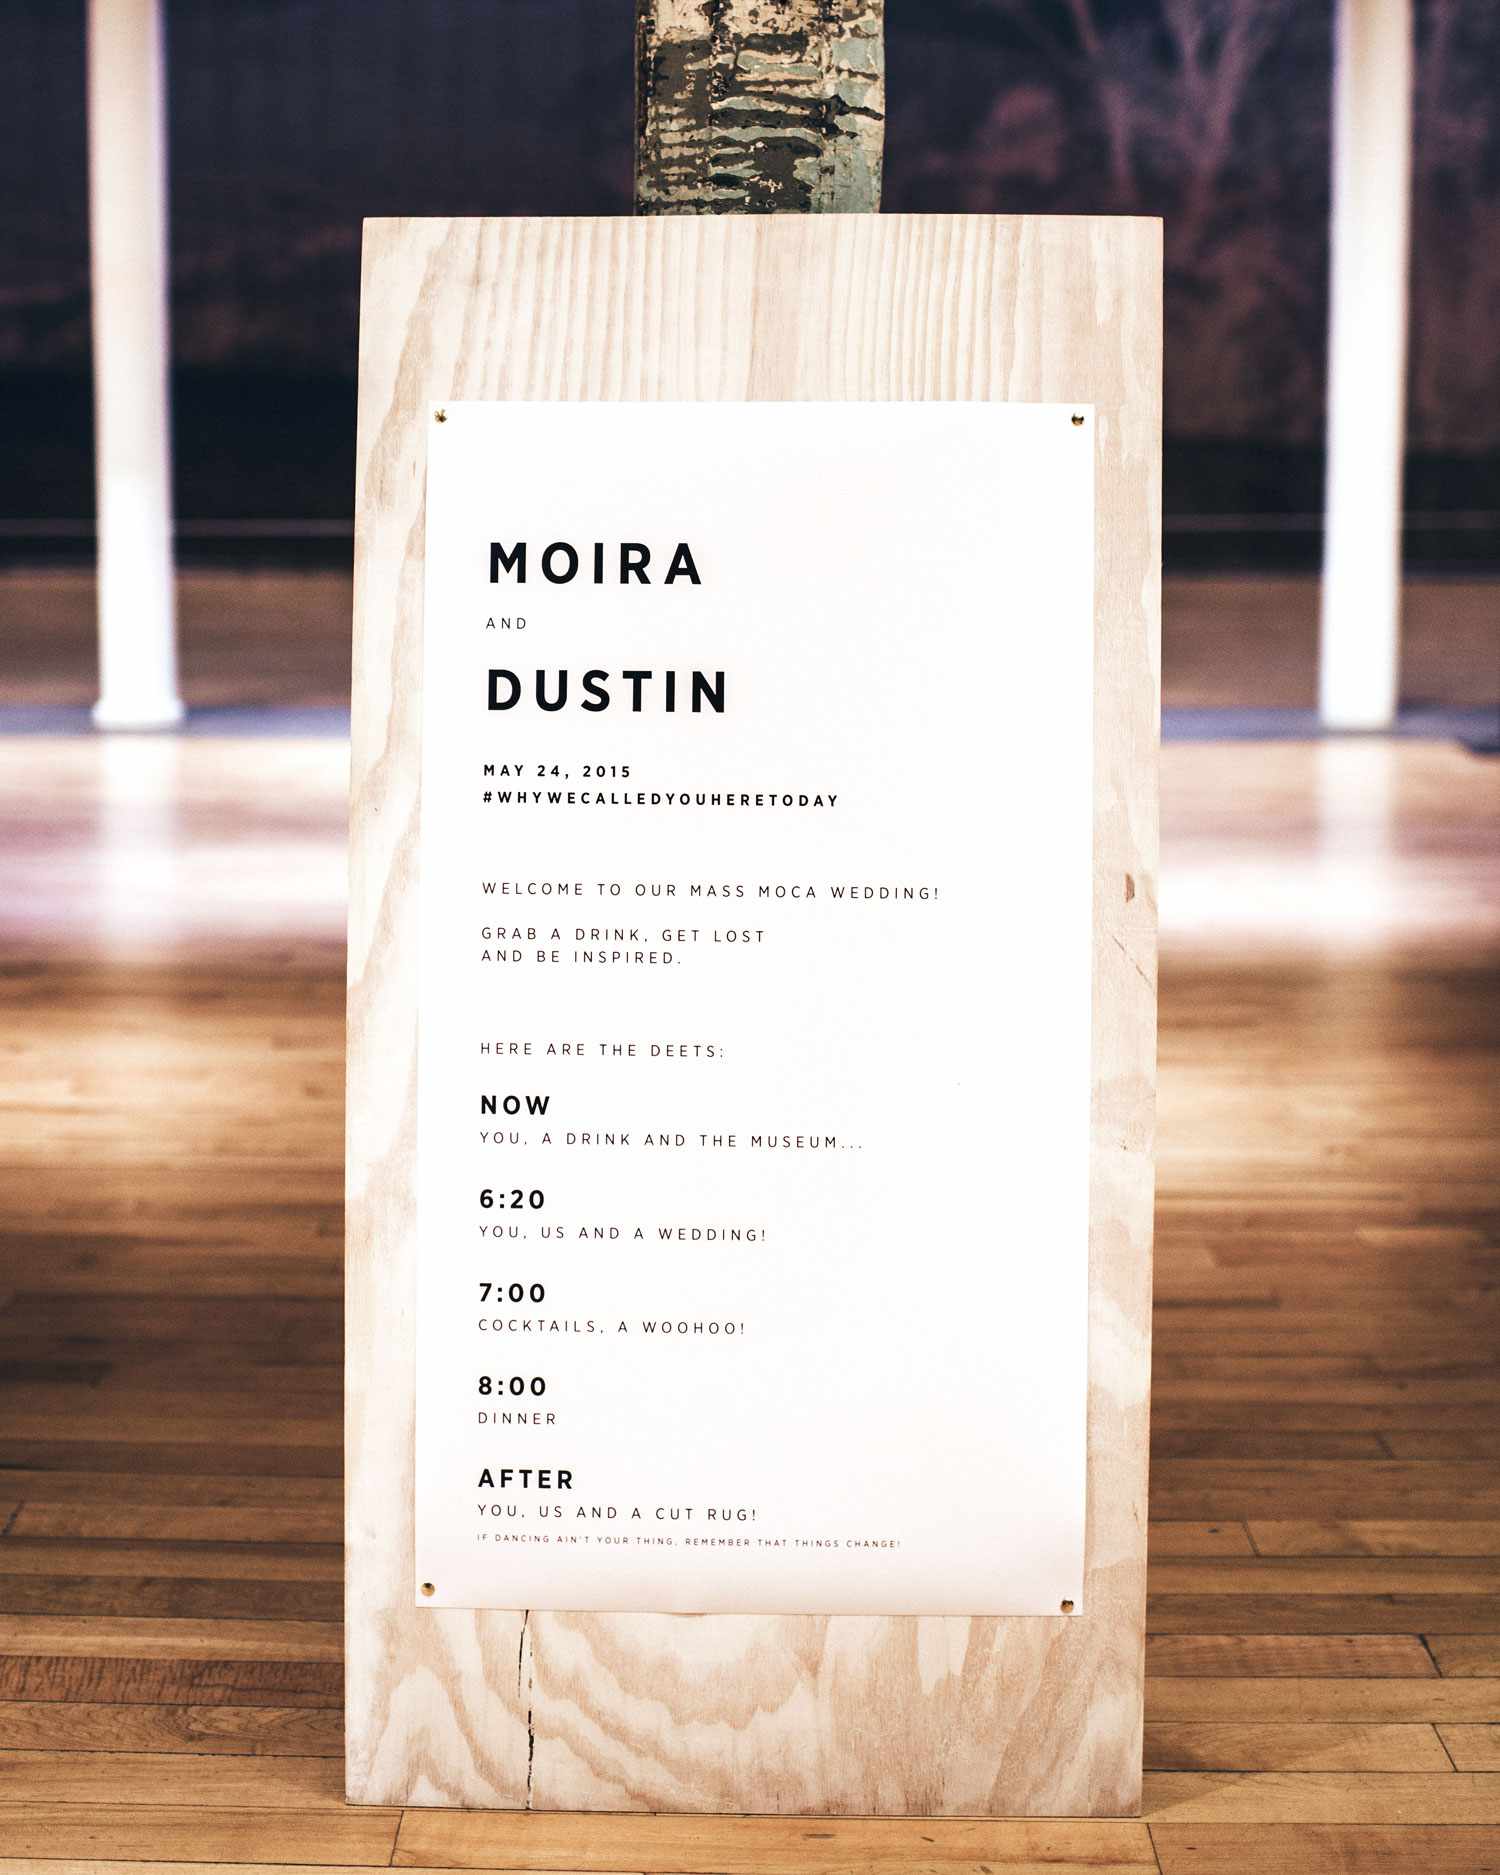 moira-dustin-wedding-timeline-massachusetts-180-s112717.jpg